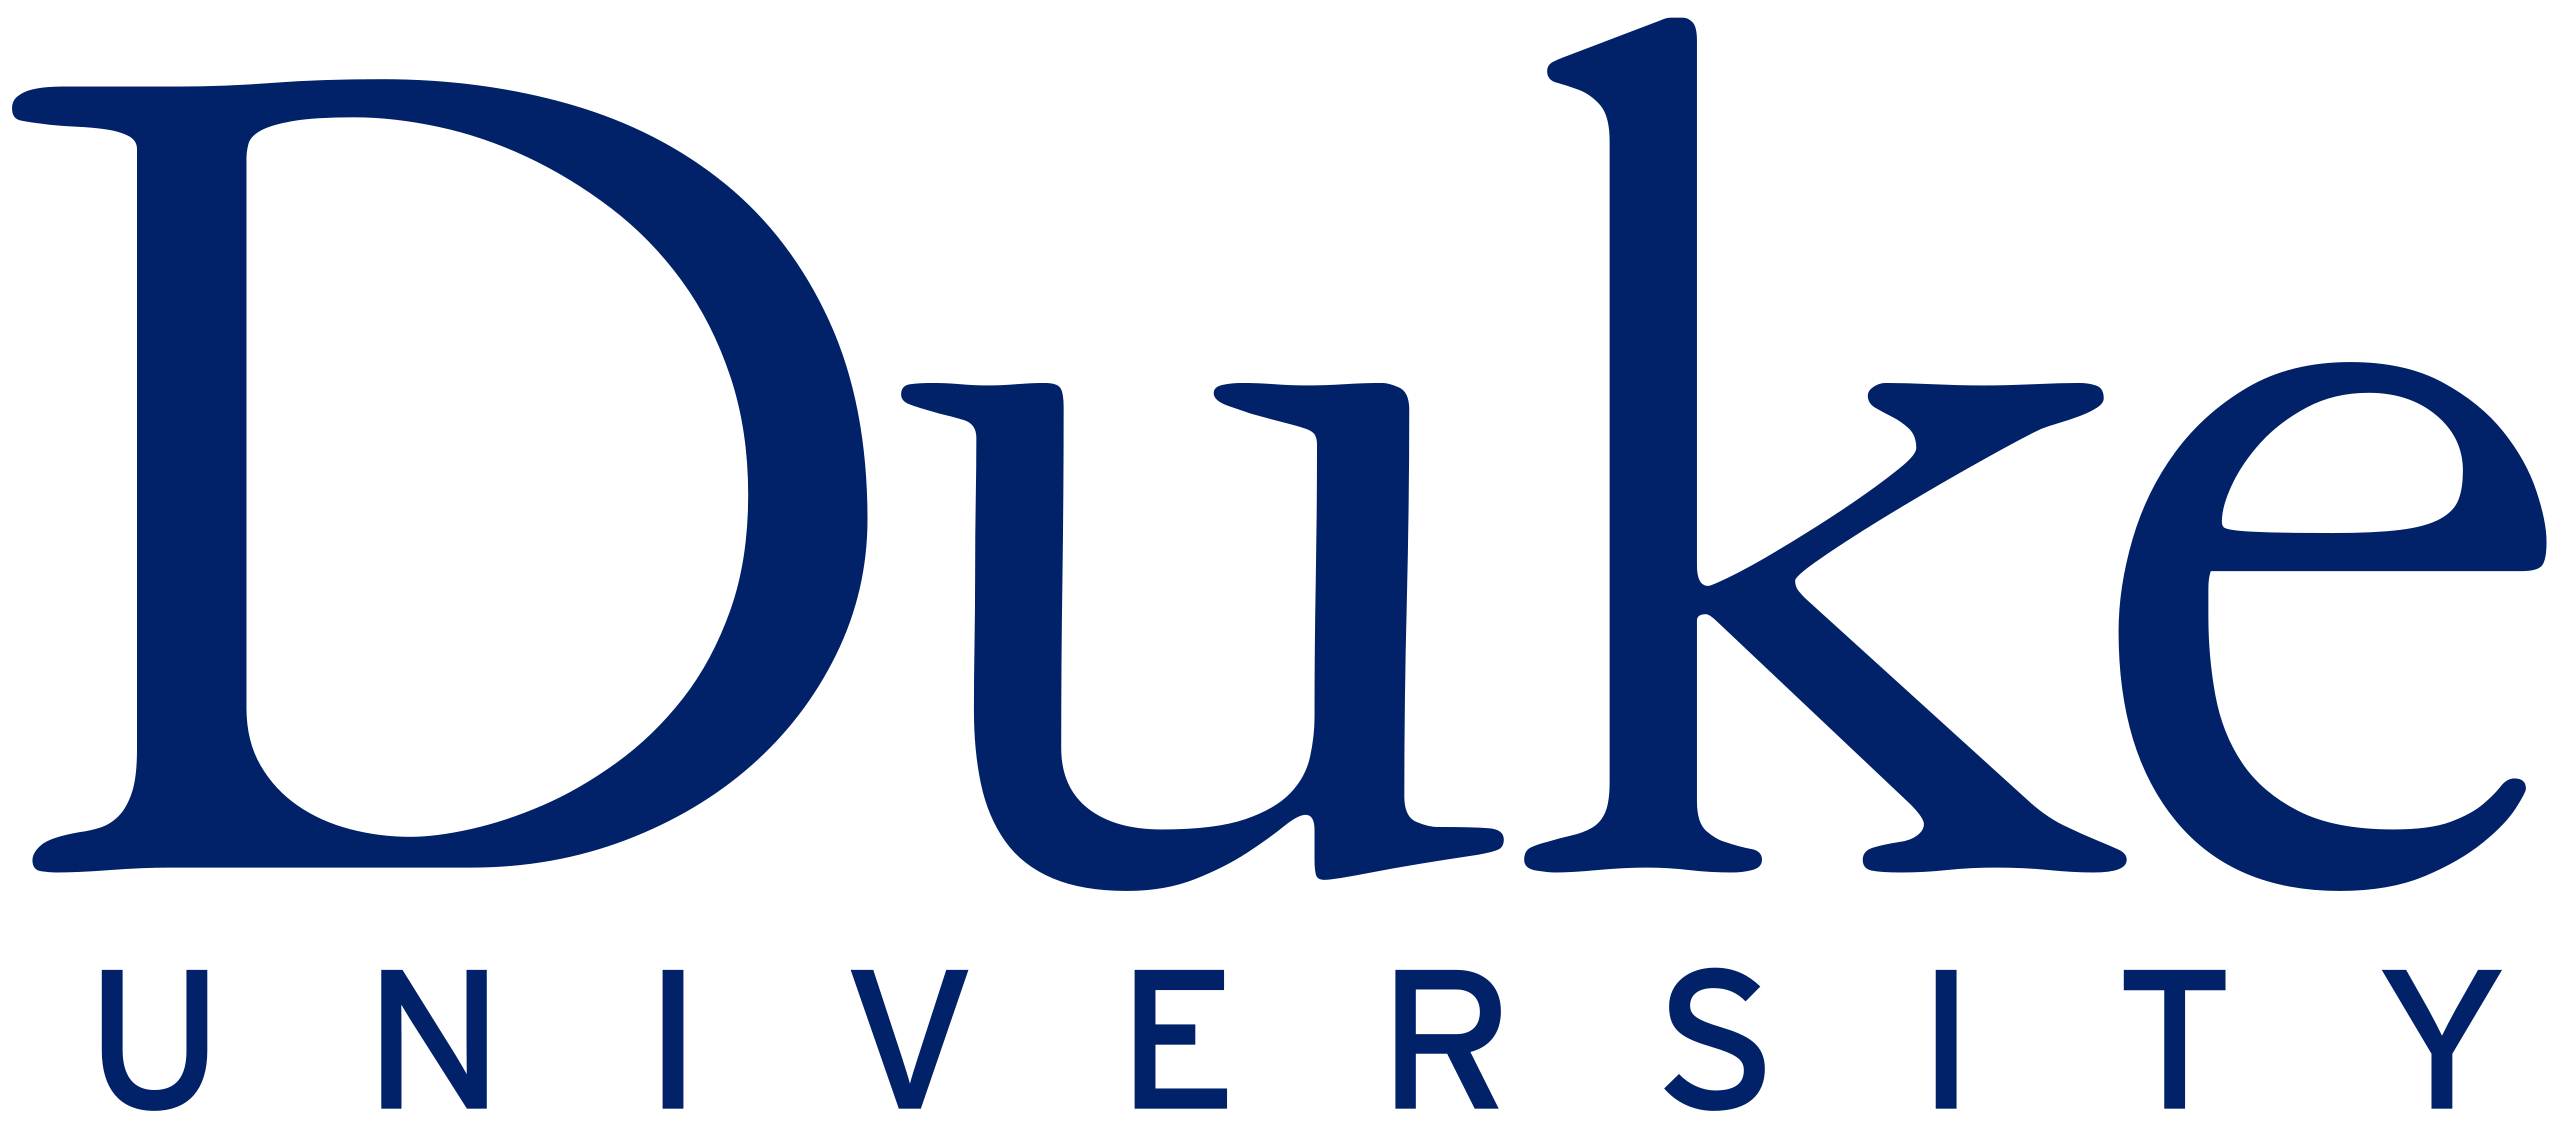 Duke_University_logo.svg